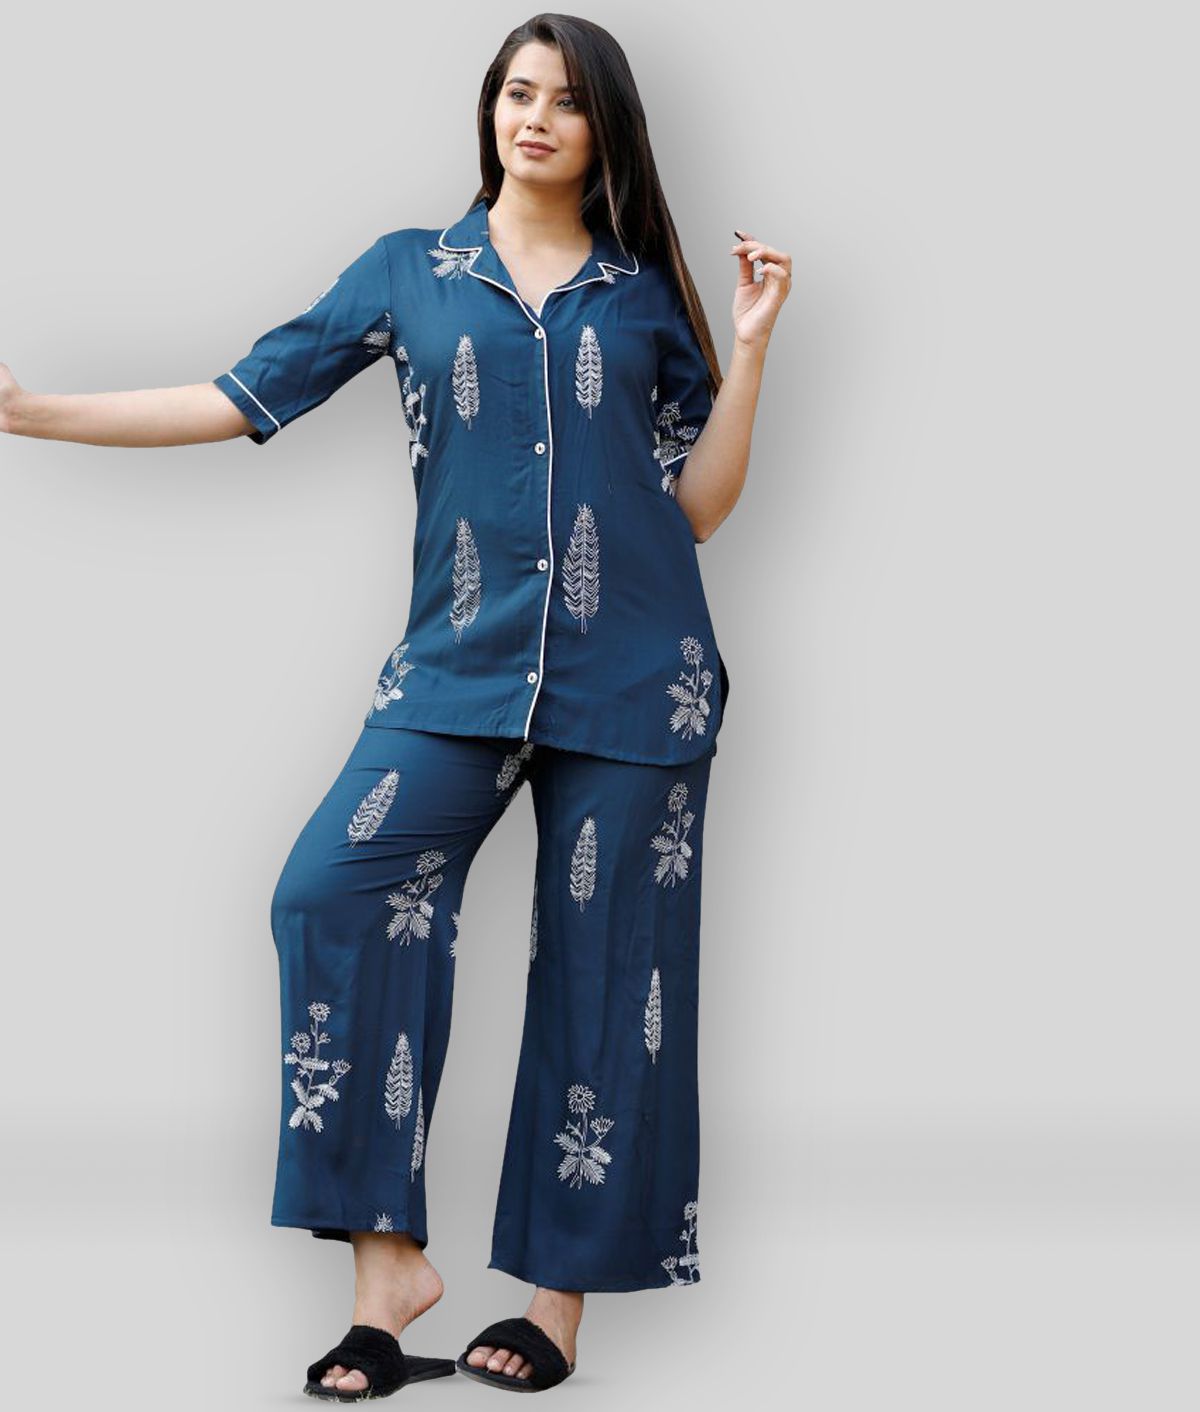     			CTMTEX - Navy Blue Rayon Women's Nightwear Nightsuit Sets